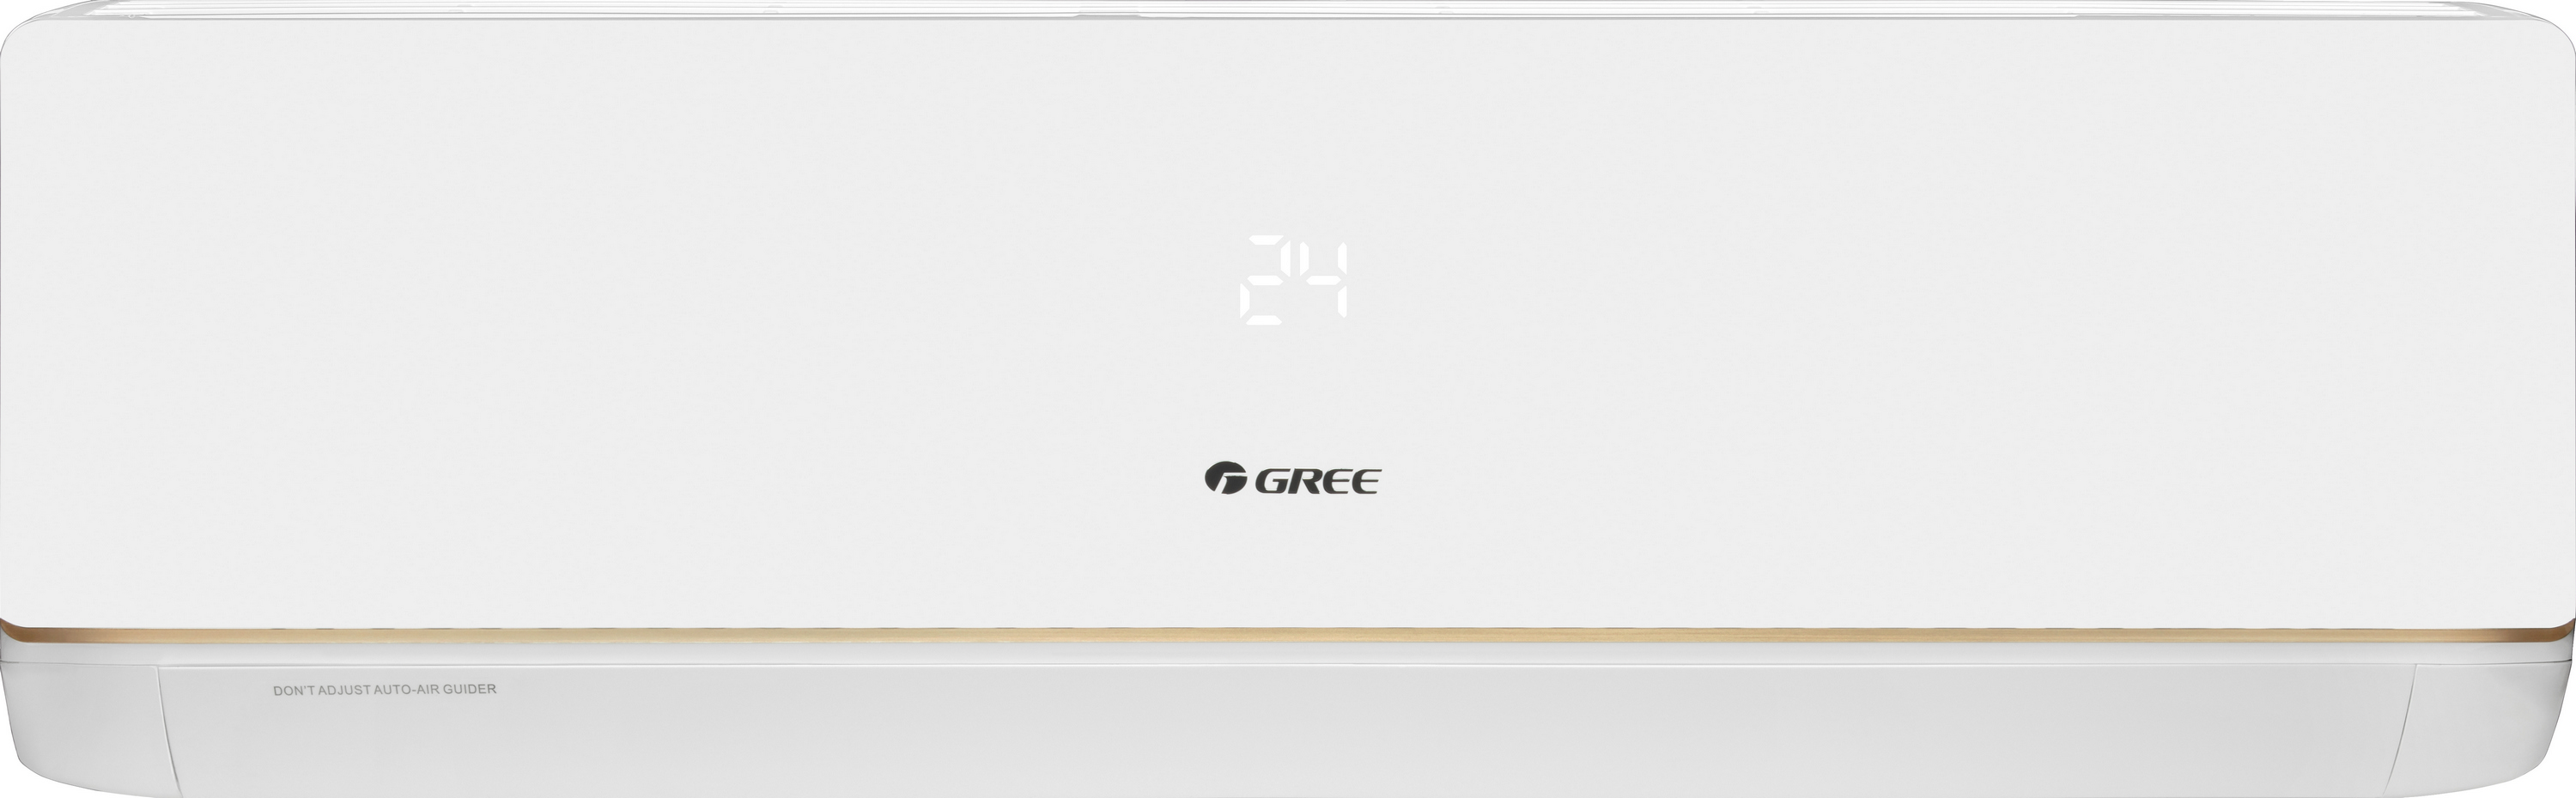 Кондиционер сплит-система Gree Bora Inverter R32 GWH09AAB-K6DNA5A Wi-Fi цена 32000.00 грн - фотография 2